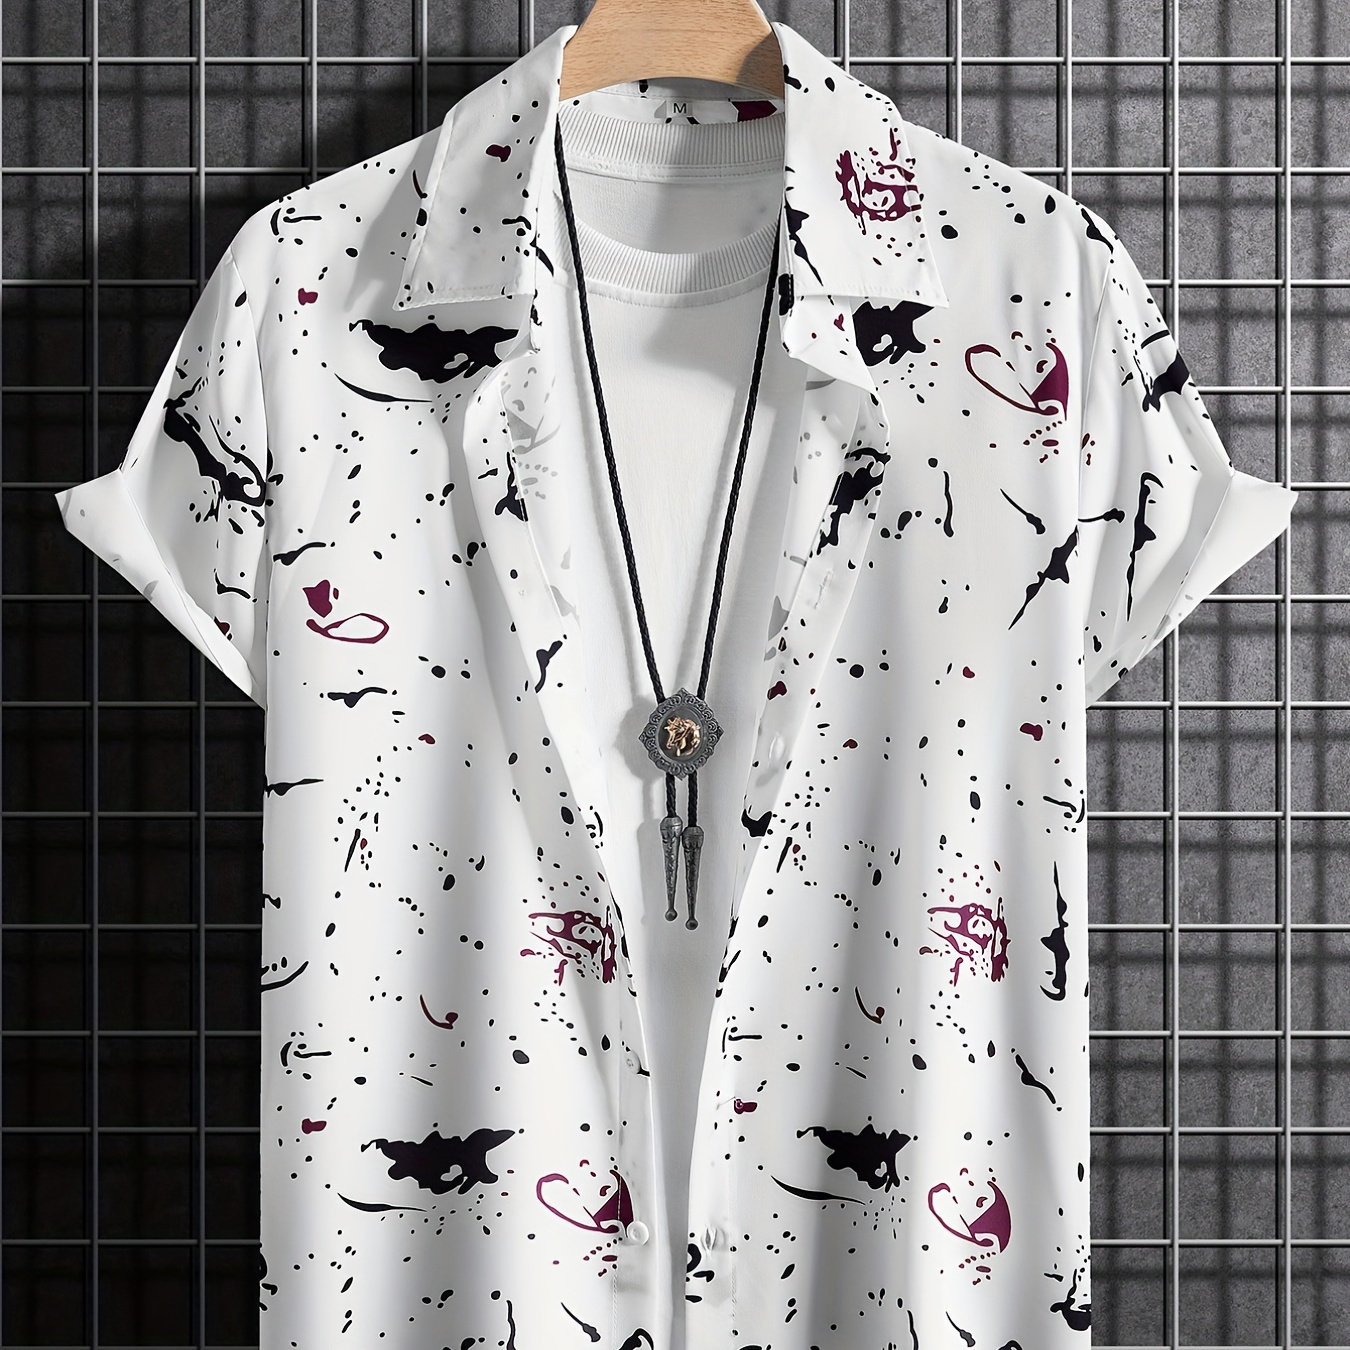 

Random Paint Splatter Pattern Casual Short Sleeve Shirt, Men's Hawaiian Shirt For Summer Vacation Resort